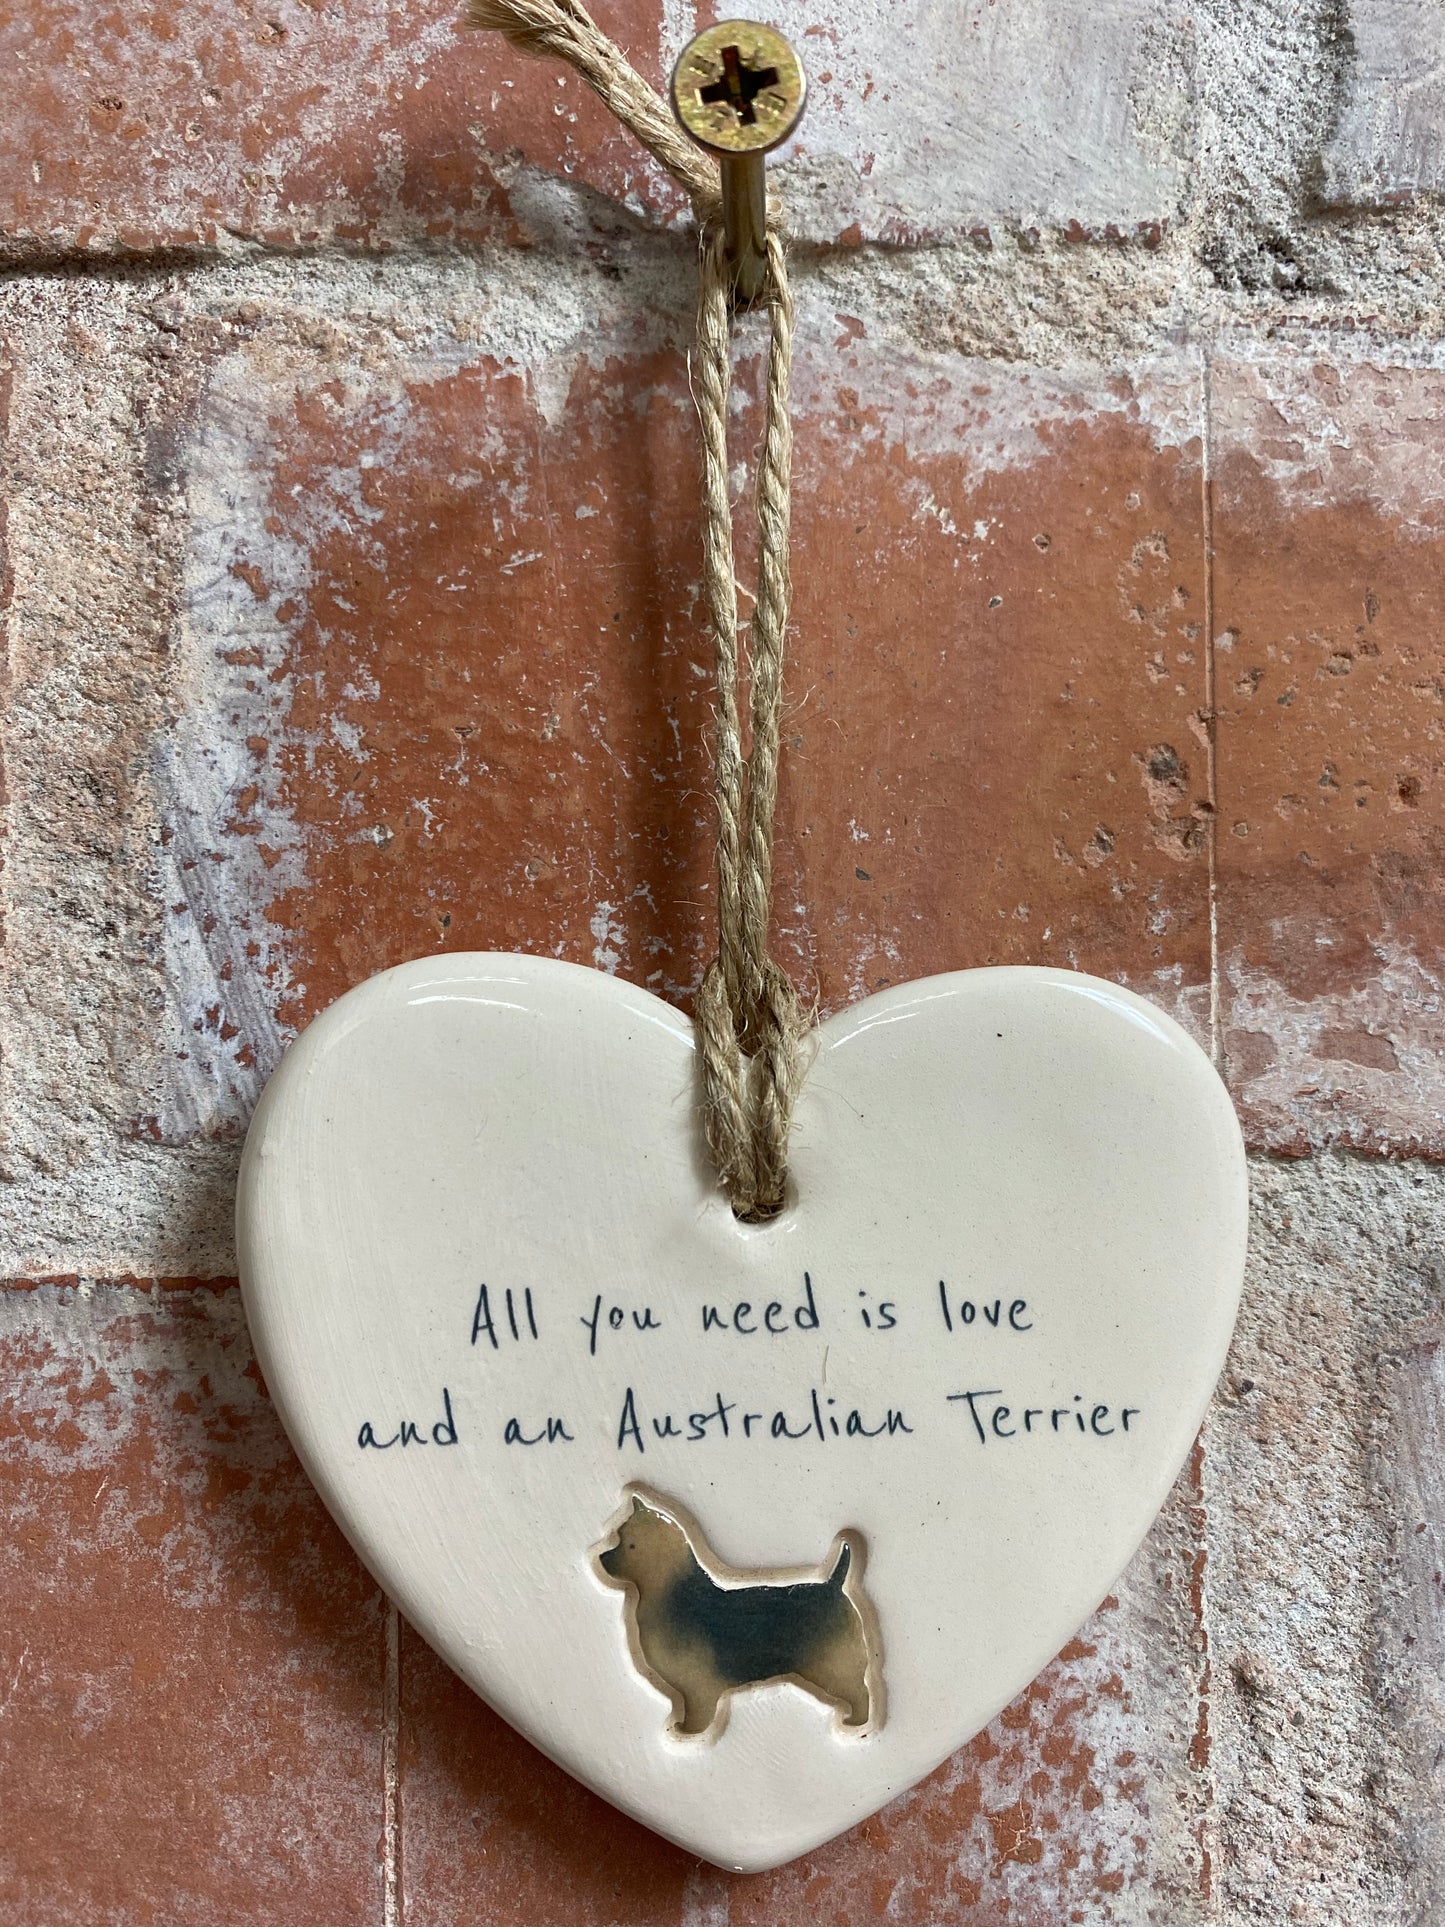 Australian Terrier ceramic heart